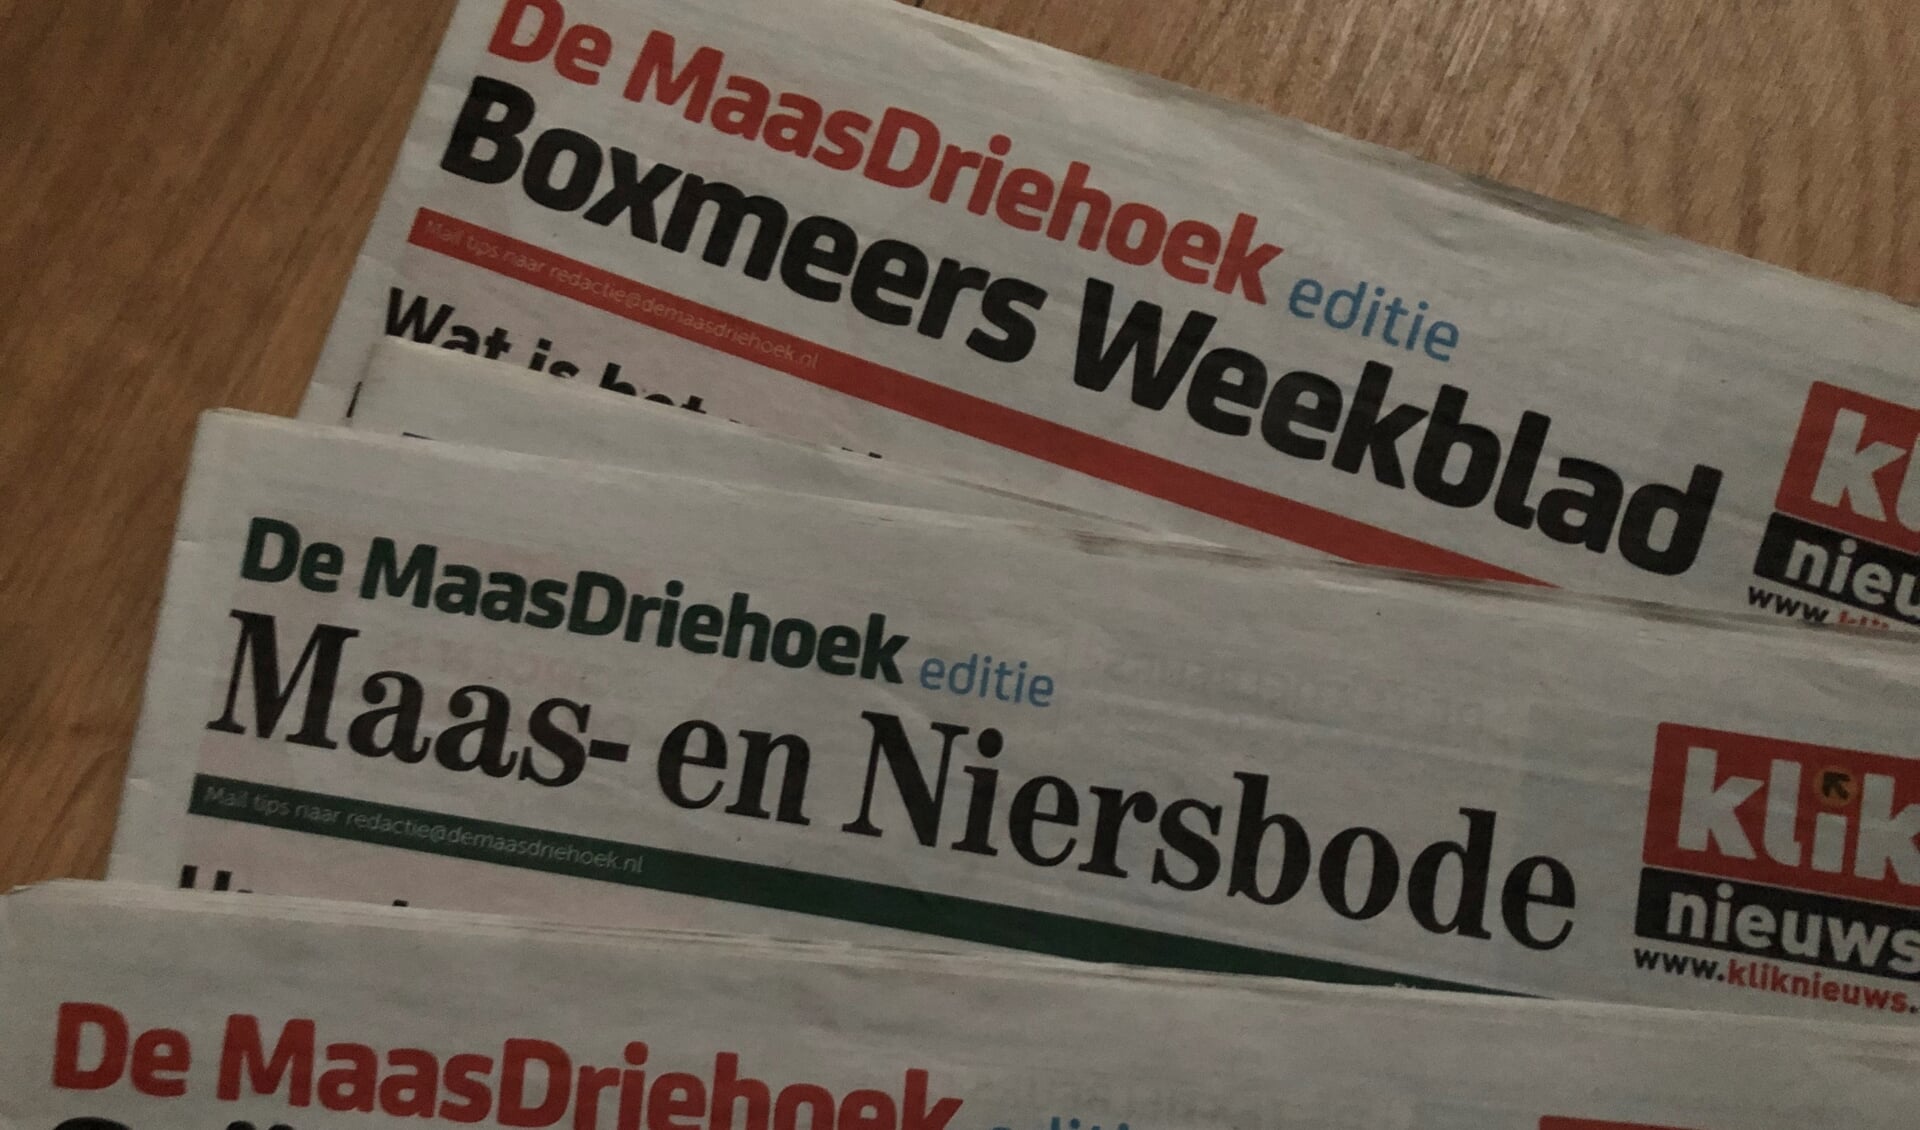 In verband met Koningsdag wordt De Maas Driehoek (week 16) vanaf maandag 26 april bezorgd.